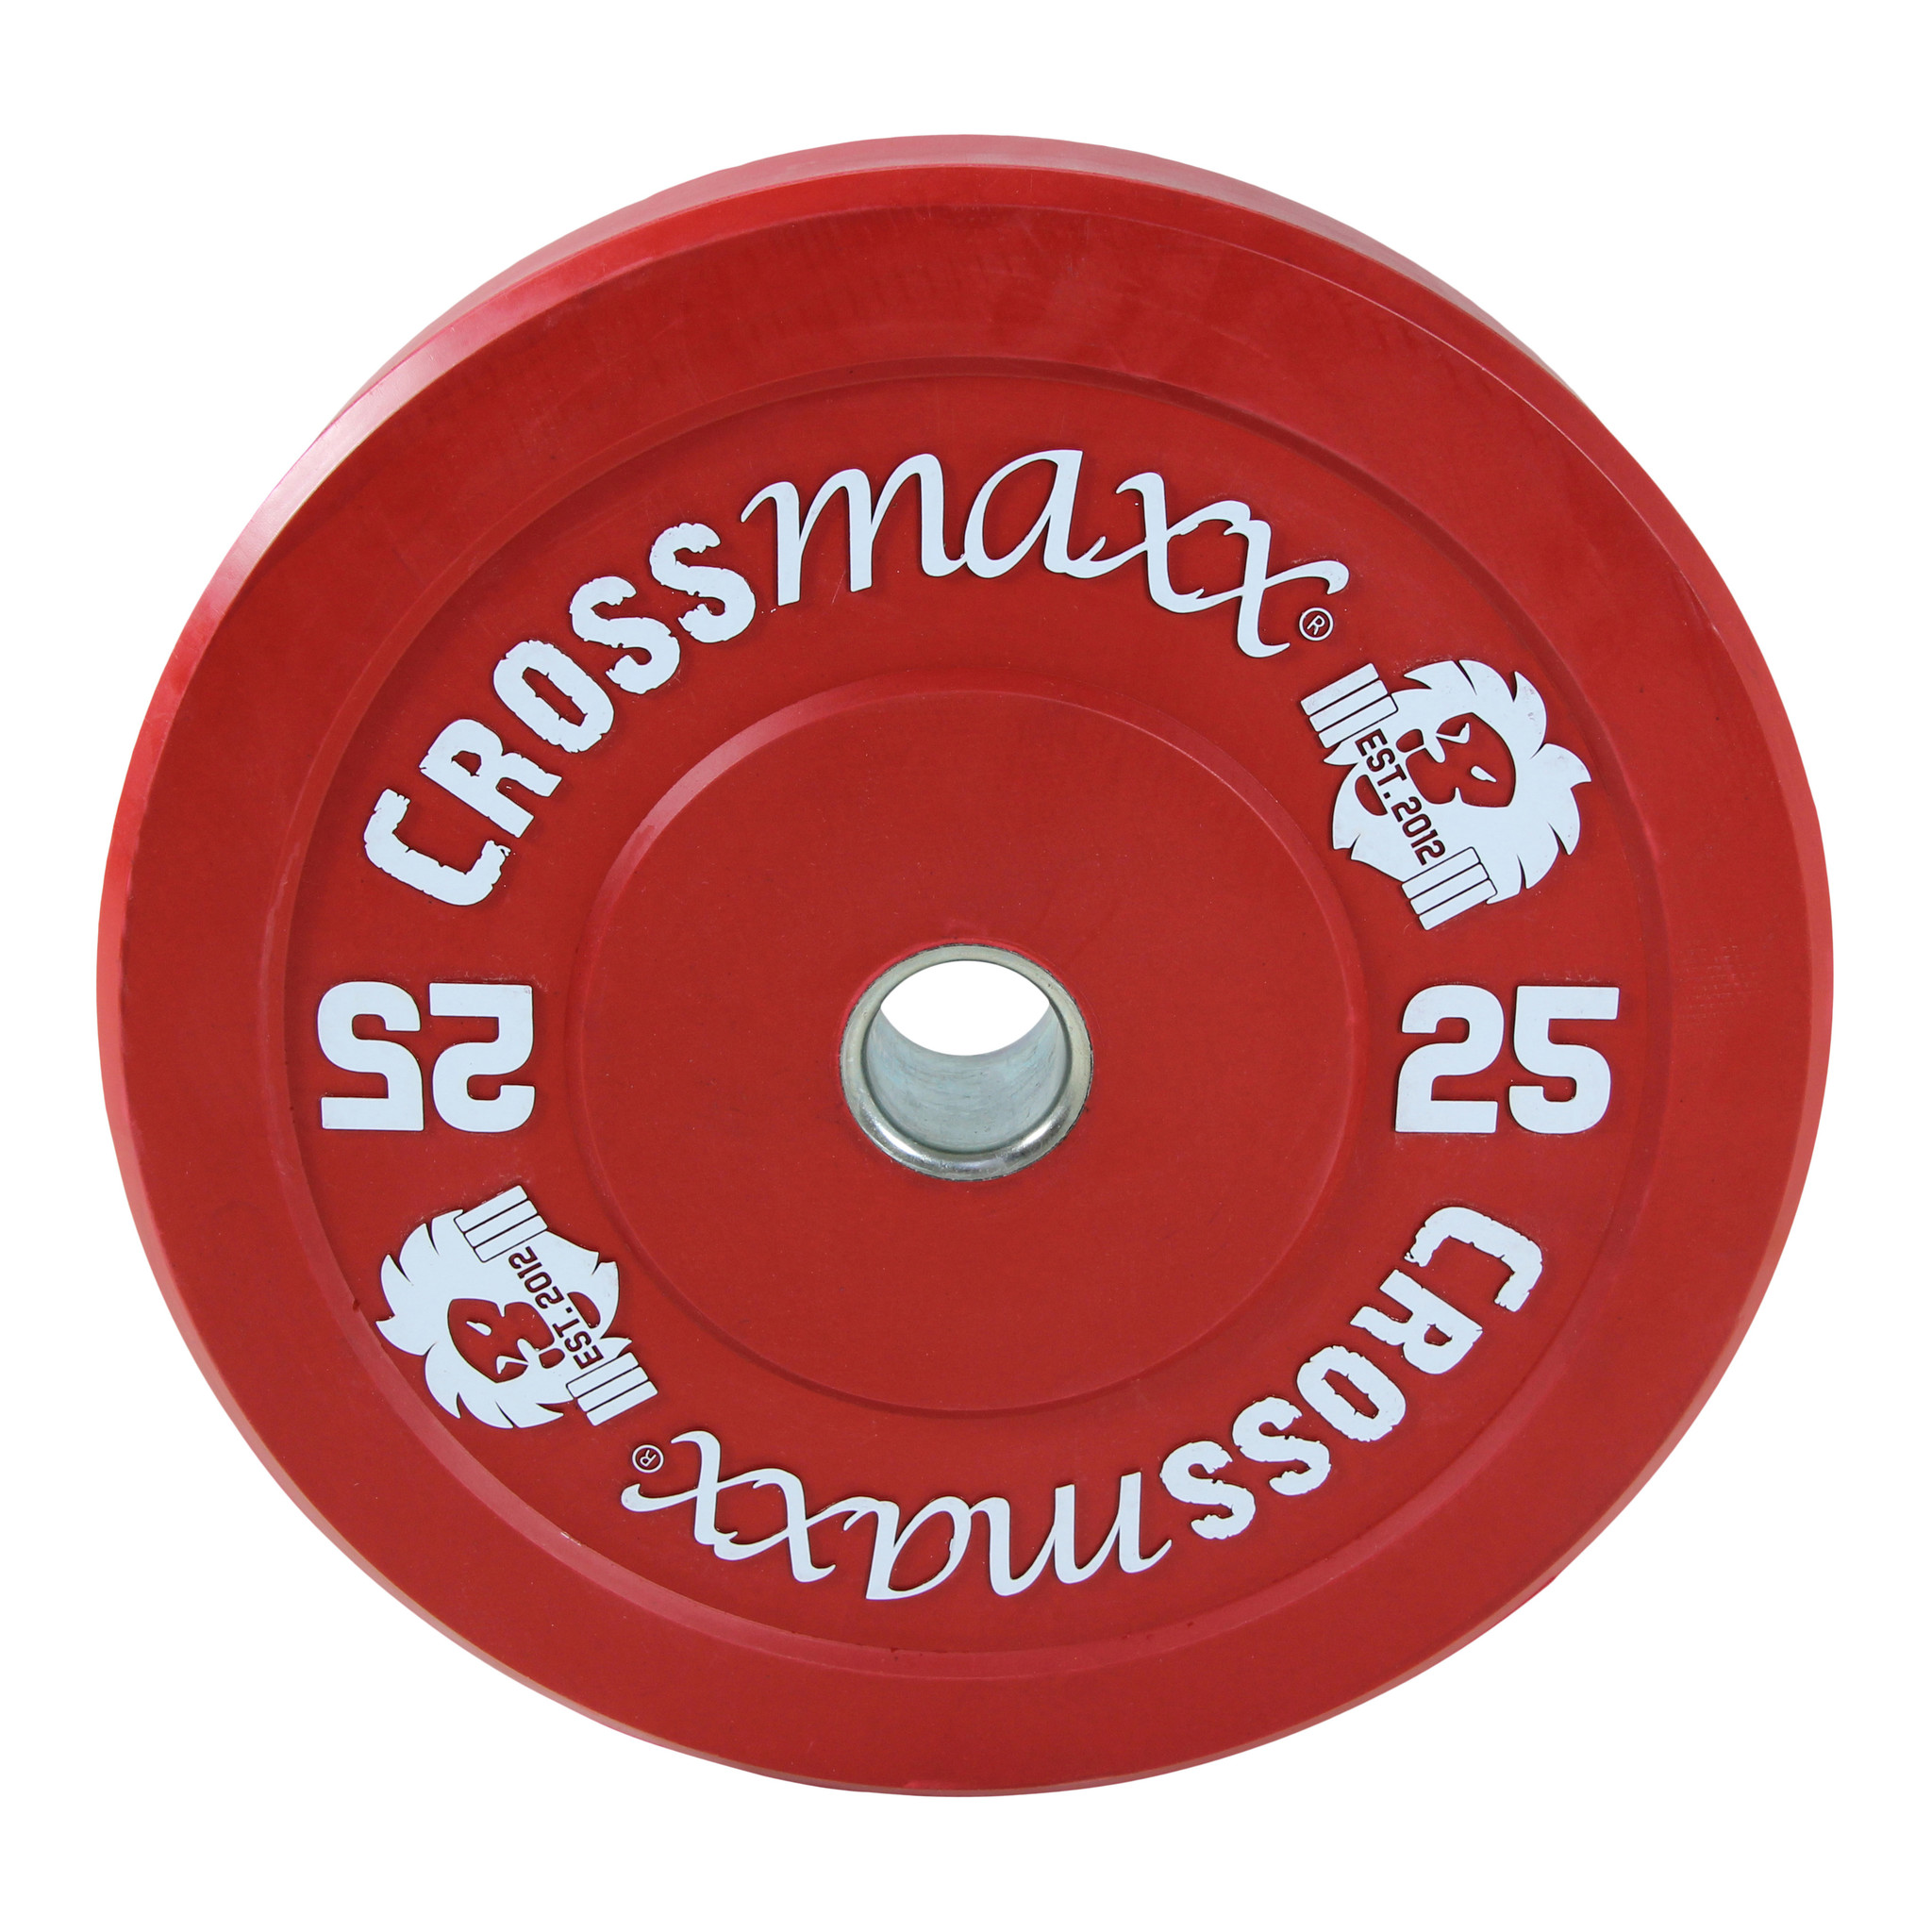 Brug Crossmaxx Bumper Plate 25 kg Rød til en forbedret oplevelse